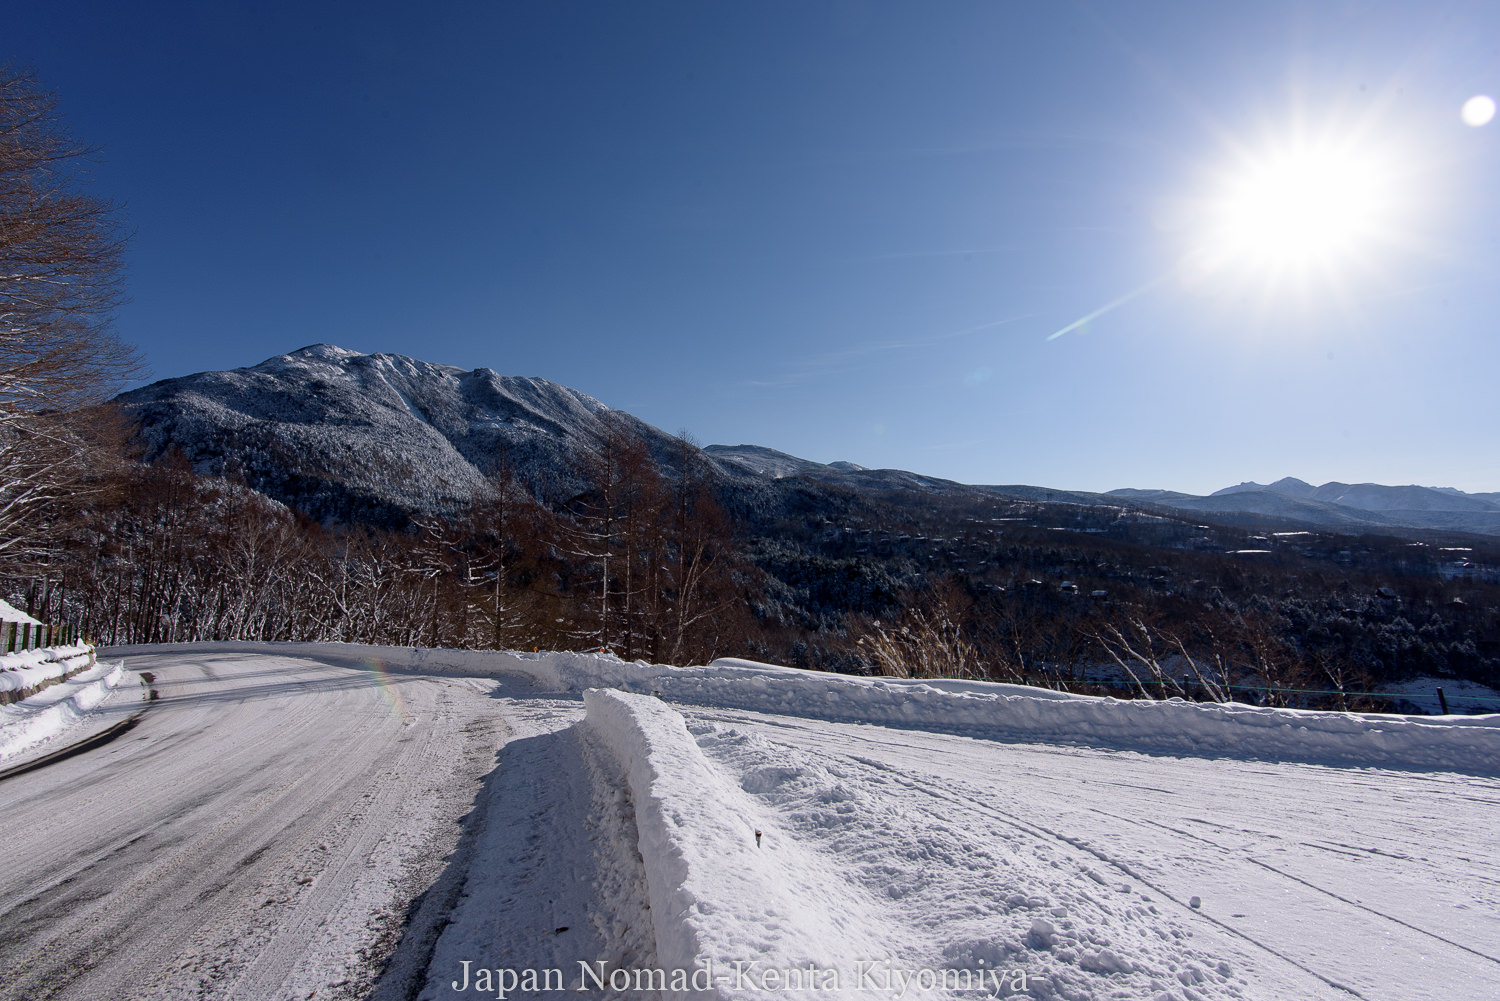 北八ヶ岳 蓼科山 雪山登山 広い山頂から八ヶ岳を眺める厳冬期百名山 Japan Nomad